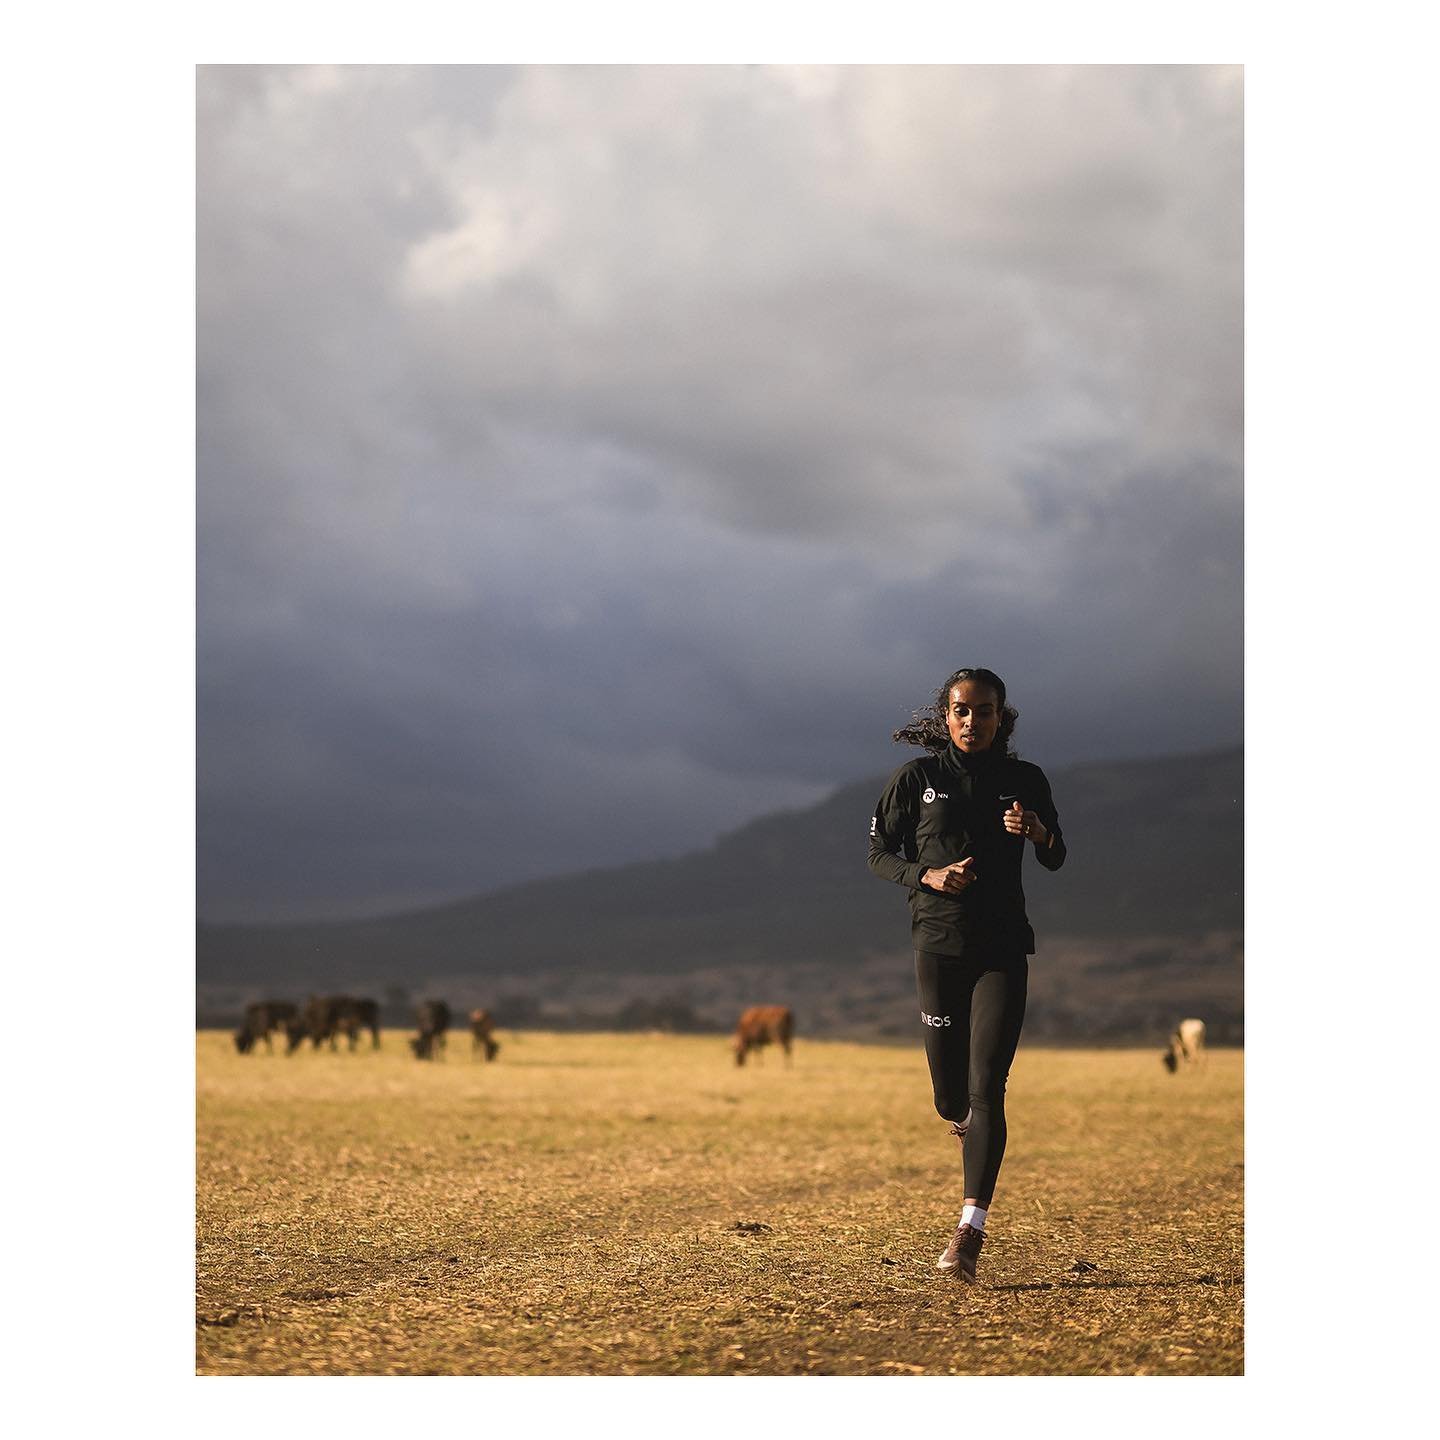 @genzebed in Ethiopia for @nnrunningteam
.
.
.
.
.
#nnrunningteam #runnersworld #runnersworldnl #ethiopiarunning #marathonrunning #genzebedibaba #ethiopia #nikonnl #mynikonlife #nikonZ9
.
📸 @vincentriemersma